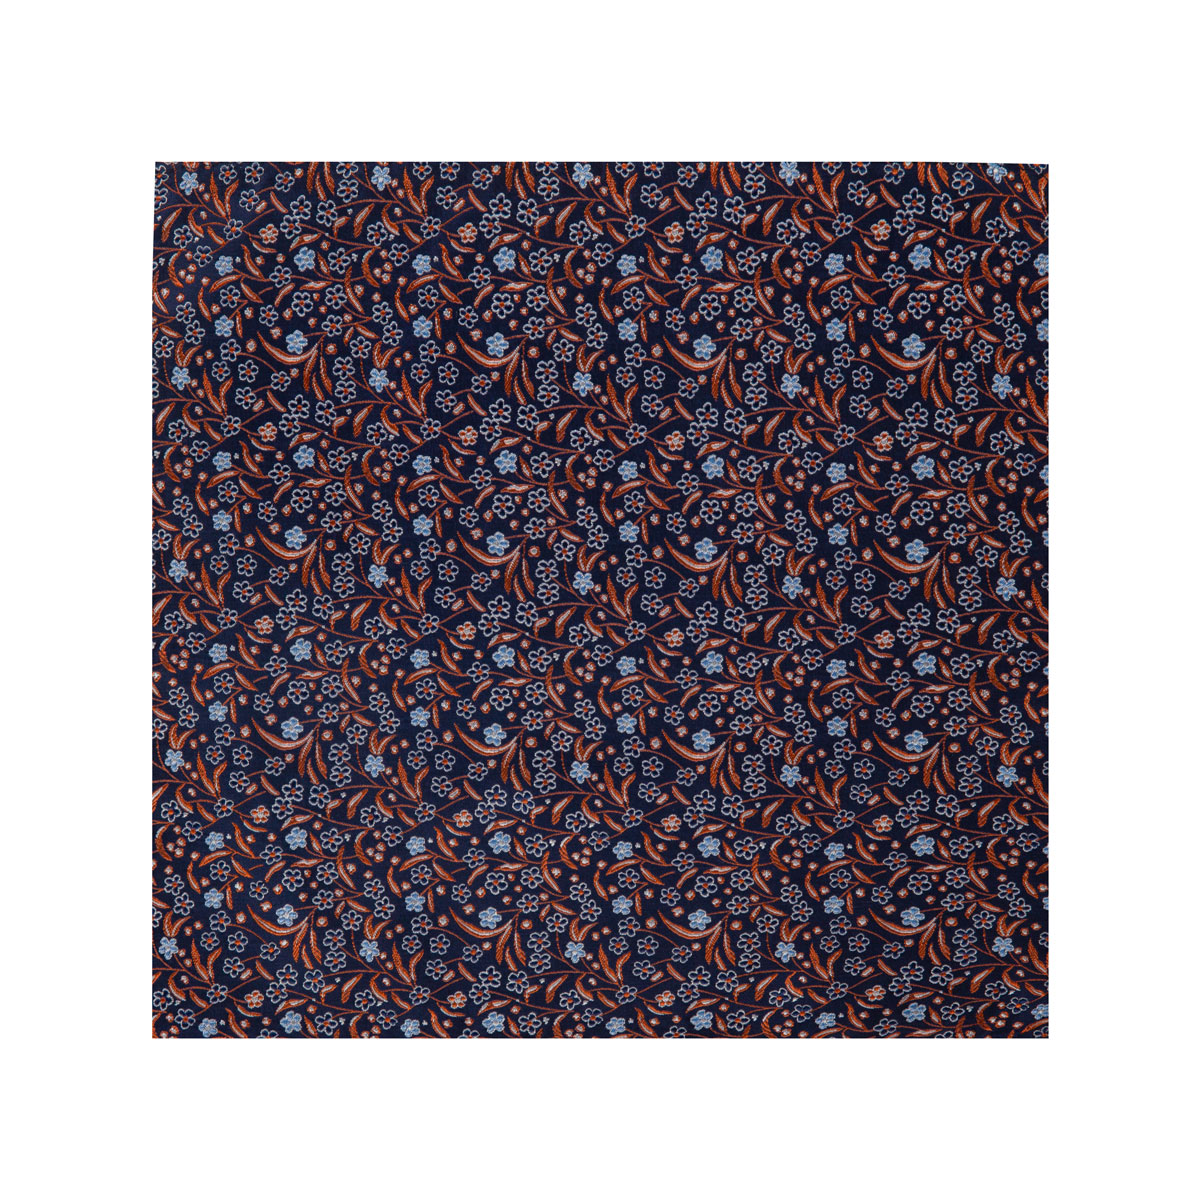 Stoff vom Einstecktuch mit Blütenmuster in dunkelblau-orange